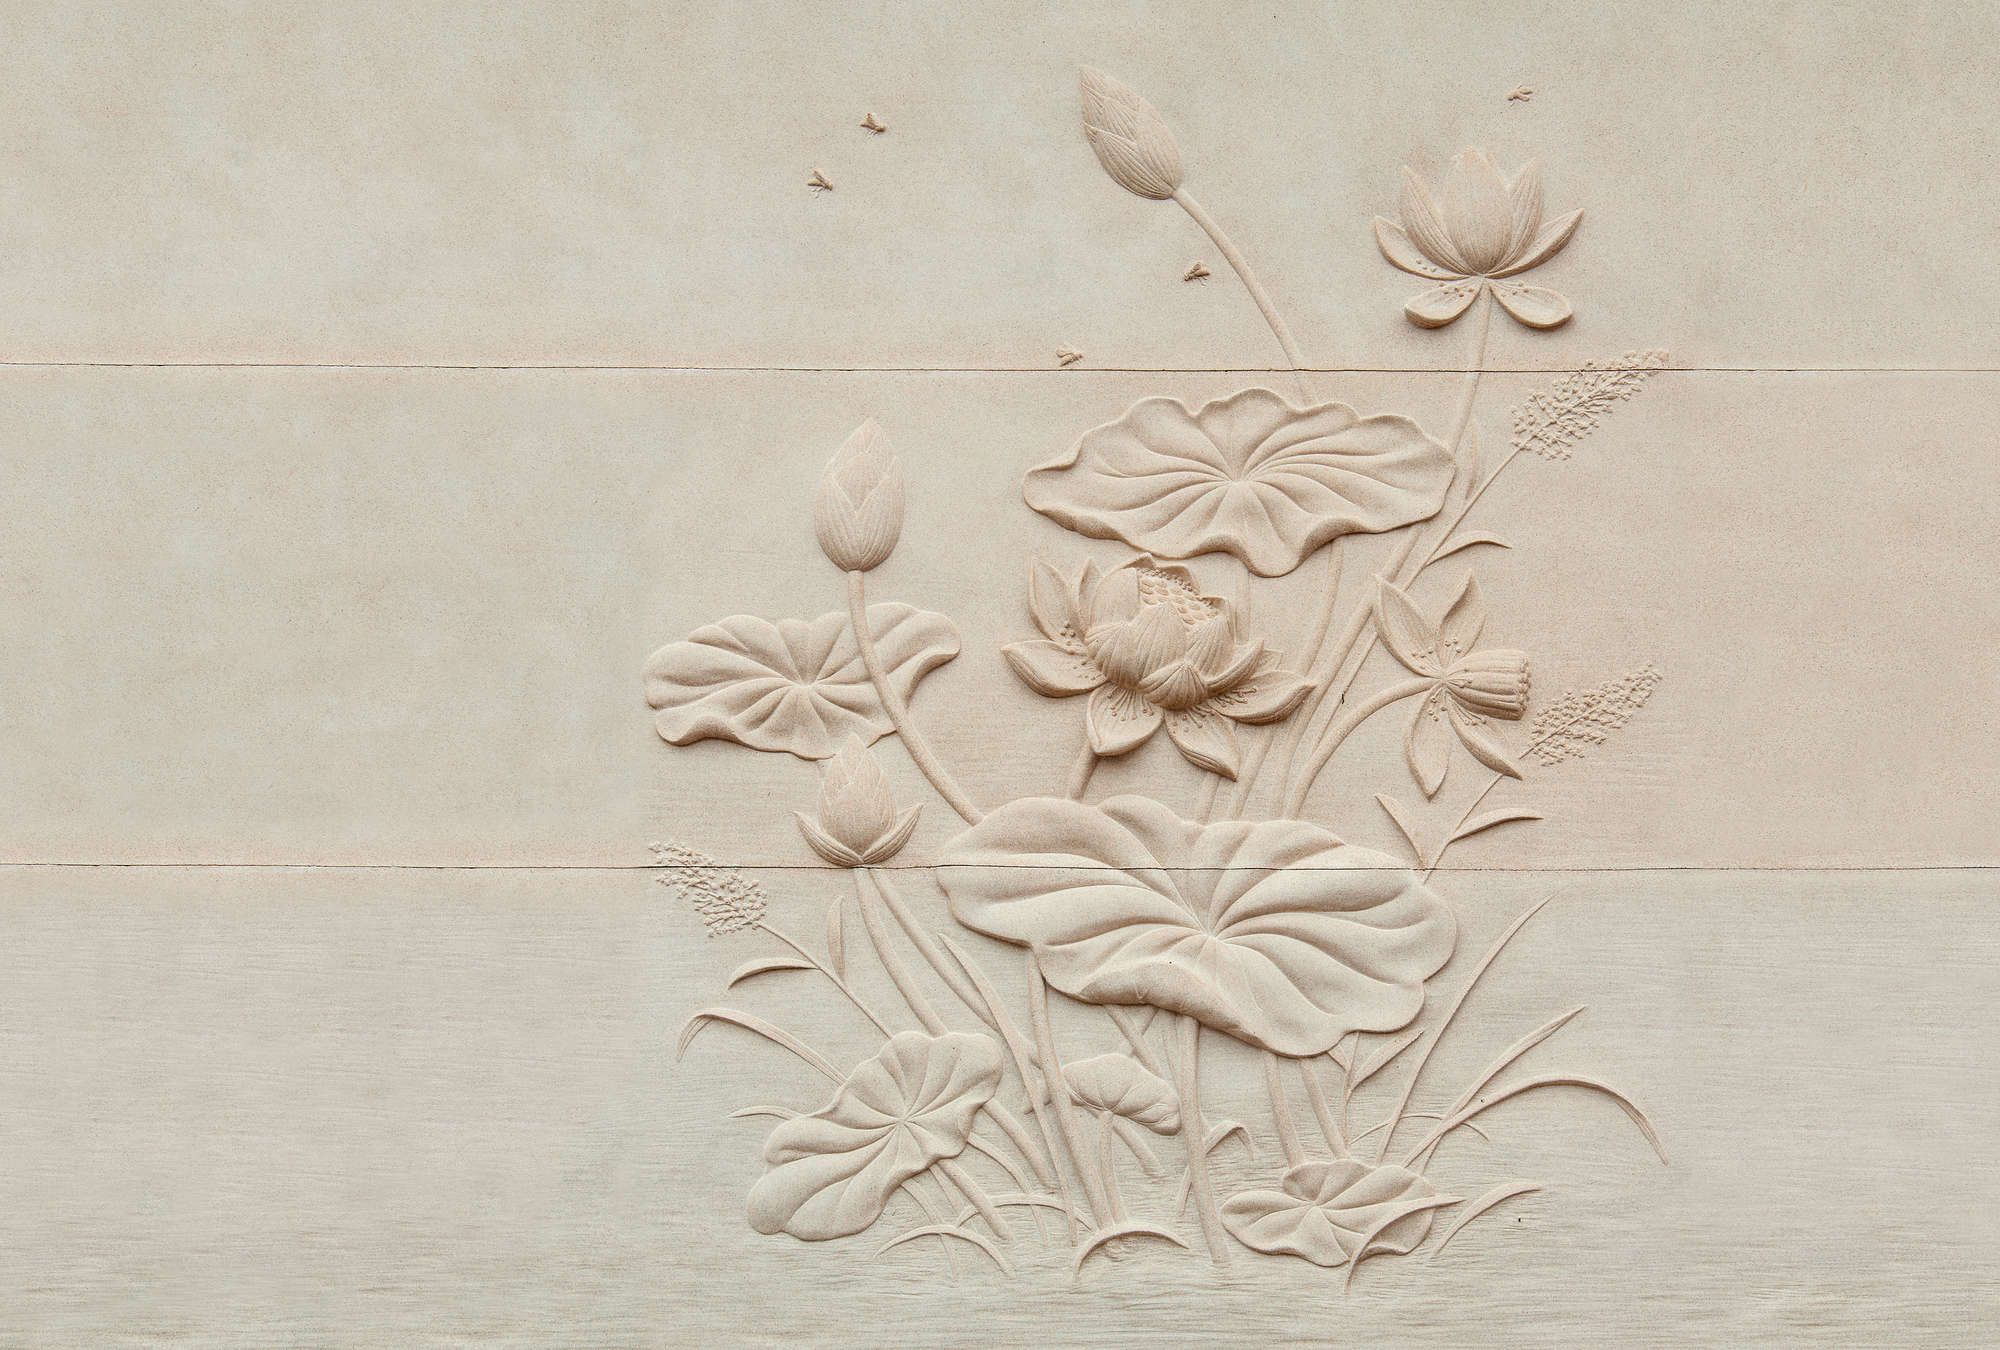             Fototapete »fiore« - Blumenrelief auf Betonstruktur – Glattes, leicht perlmutt-schimmerndes Vlies
        